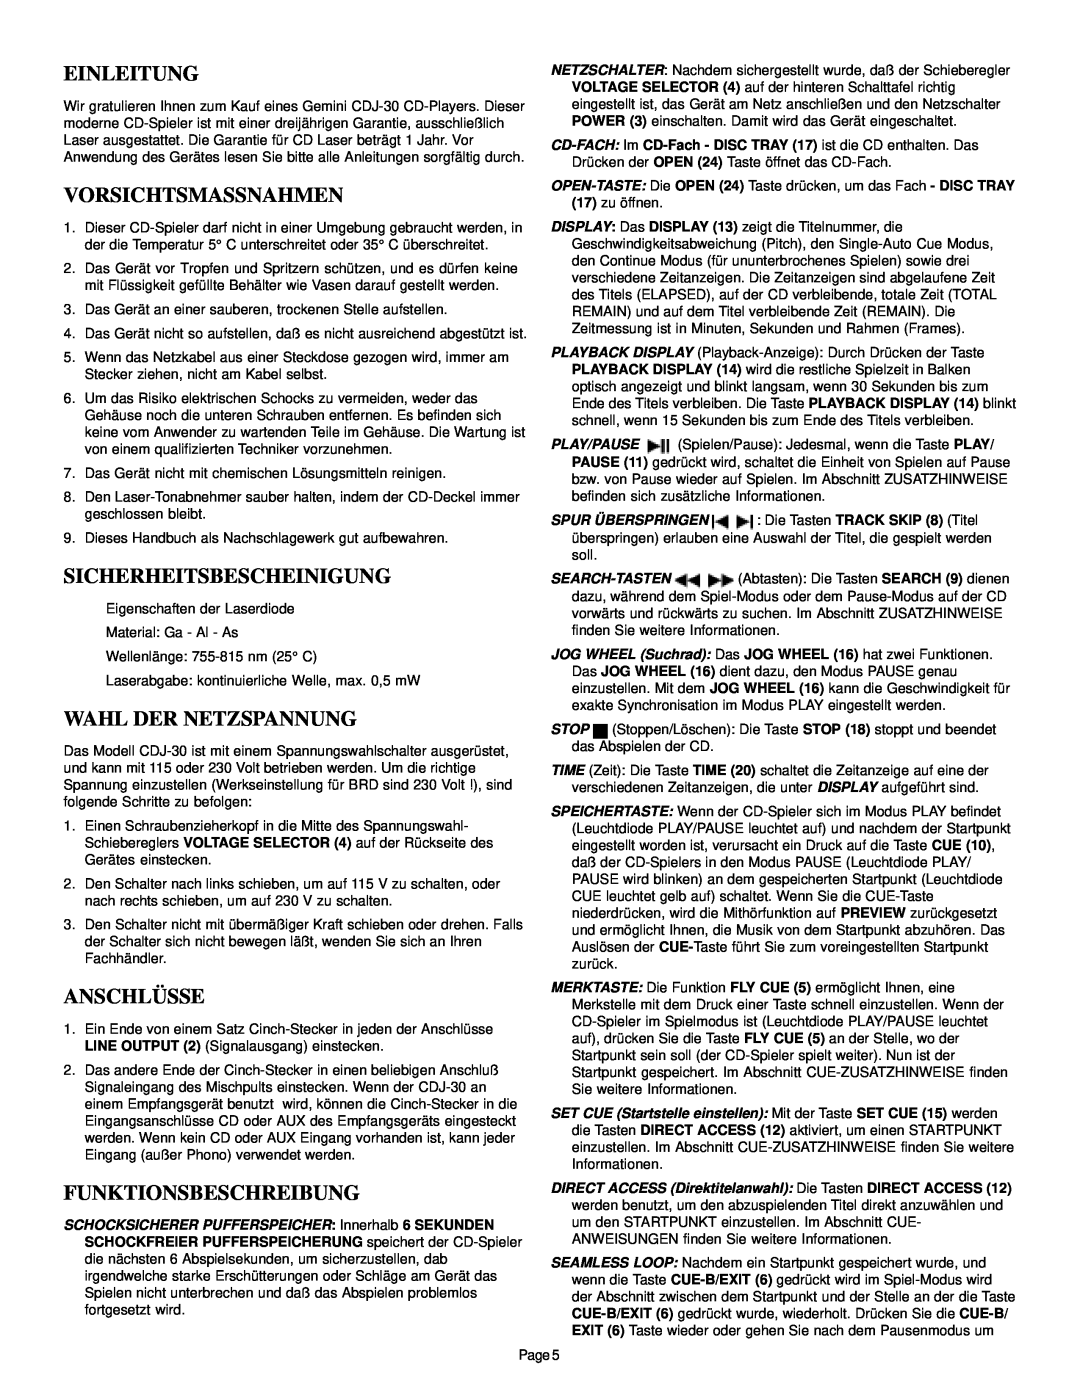 Gemini CDJ-30 manual Einleitung, Vorsichtsmassnahmen, Sicherheitsbescheinigung, Wahl Der Netzspannung, Anschlüsse 